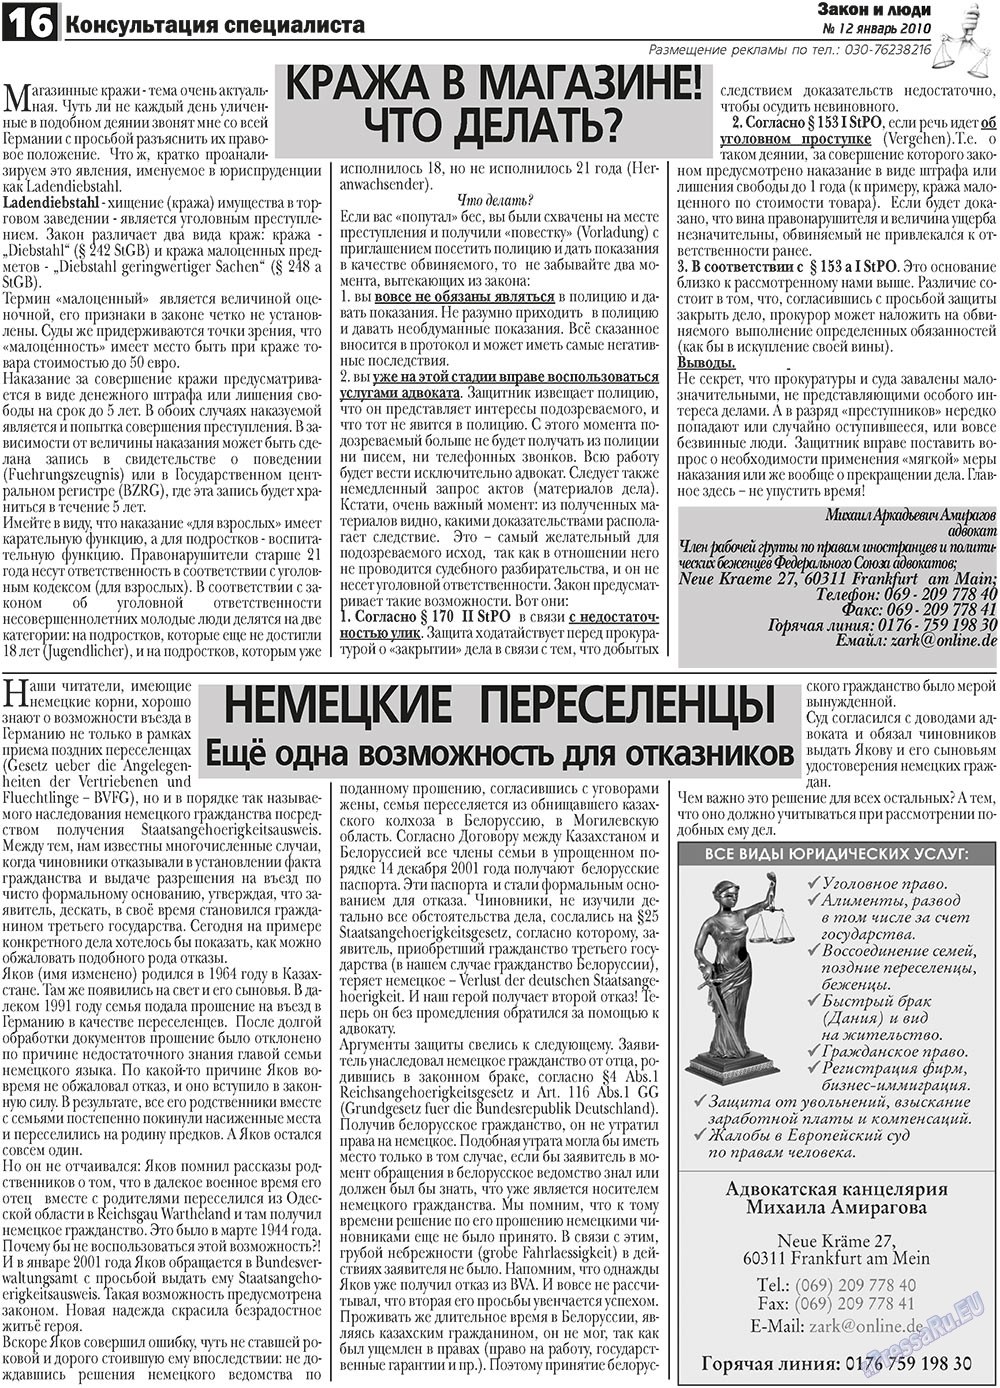 Закон и люди (газета). 2011 год, номер 1, стр. 16